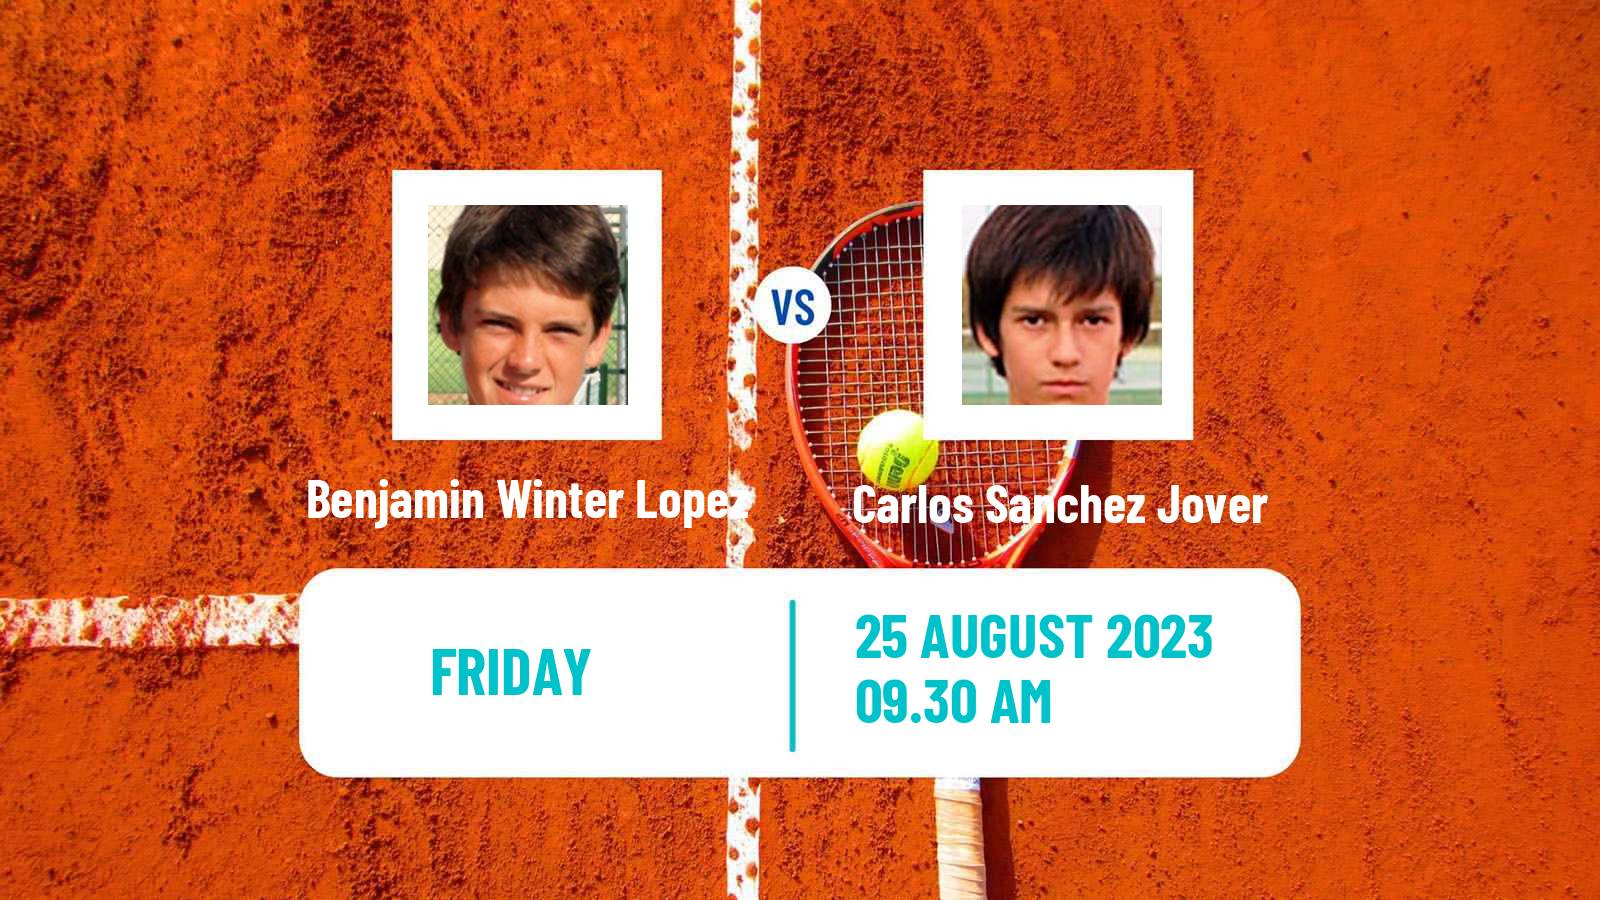 Tennis ITF M25 Santander Men Benjamin Winter Lopez - Carlos Sanchez Jover